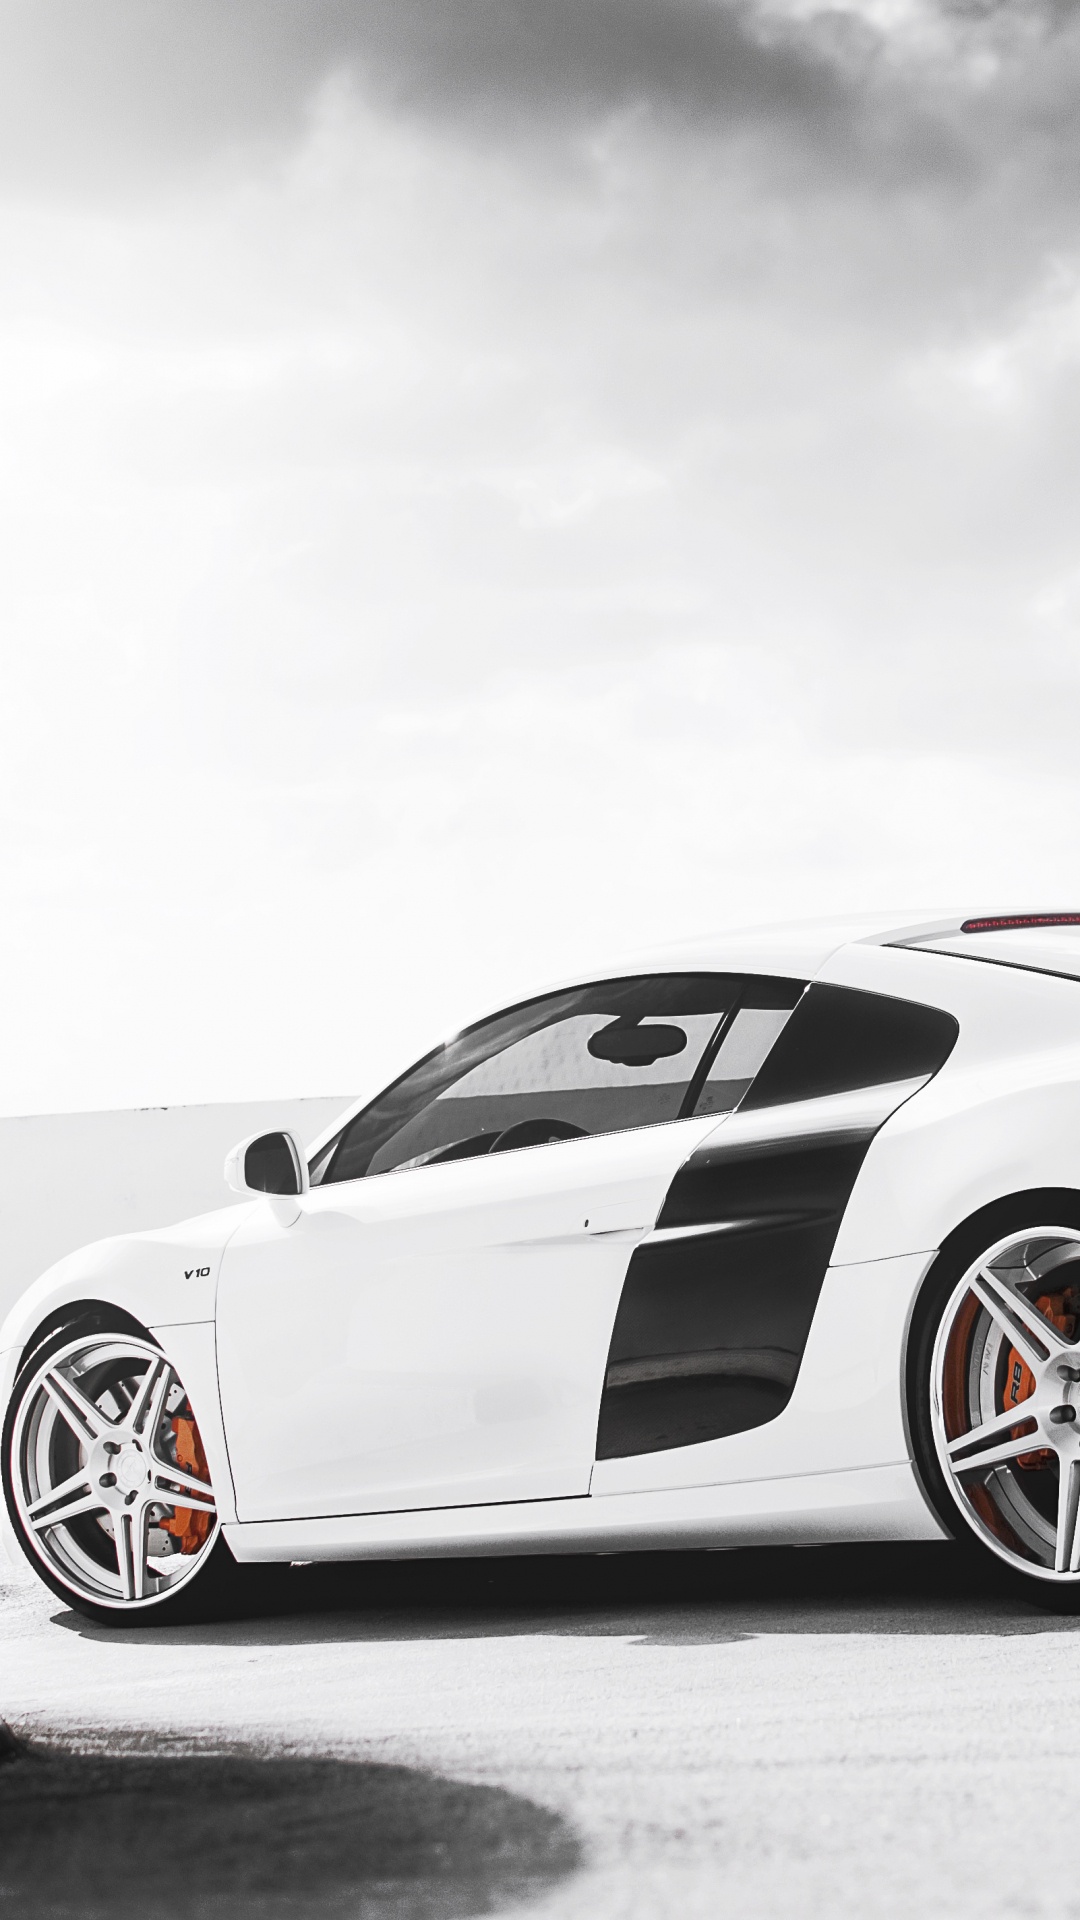 White Porsche 911 on Black Surface. Wallpaper in 1080x1920 Resolution